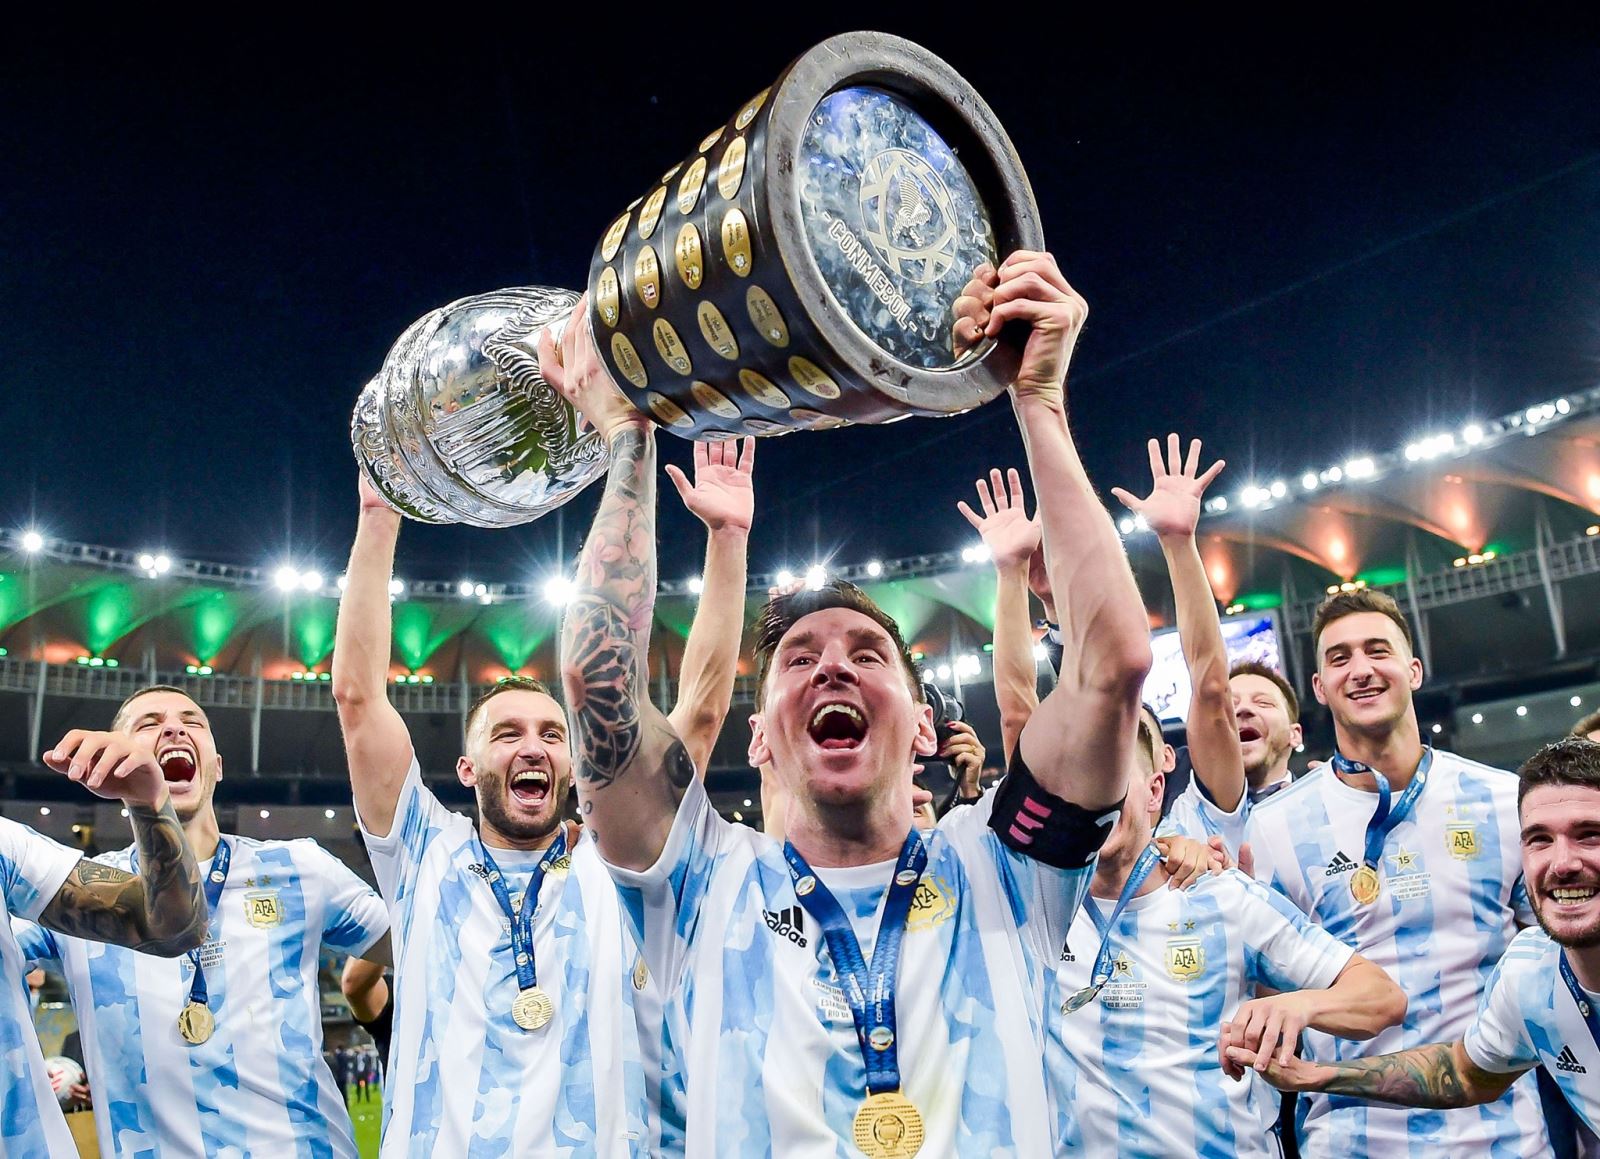 Quả bóng vàng là niềm tự hào của Lionel Messi. Chỉ với chân nghệ thuật của mình, anh đã giành được tấm vé vào thế giới khoác áo Argentina giành được giải thưởng cao quý này. Hãy đến và cùng tận hưởng những khoảnh khắc ấn tượng đó.